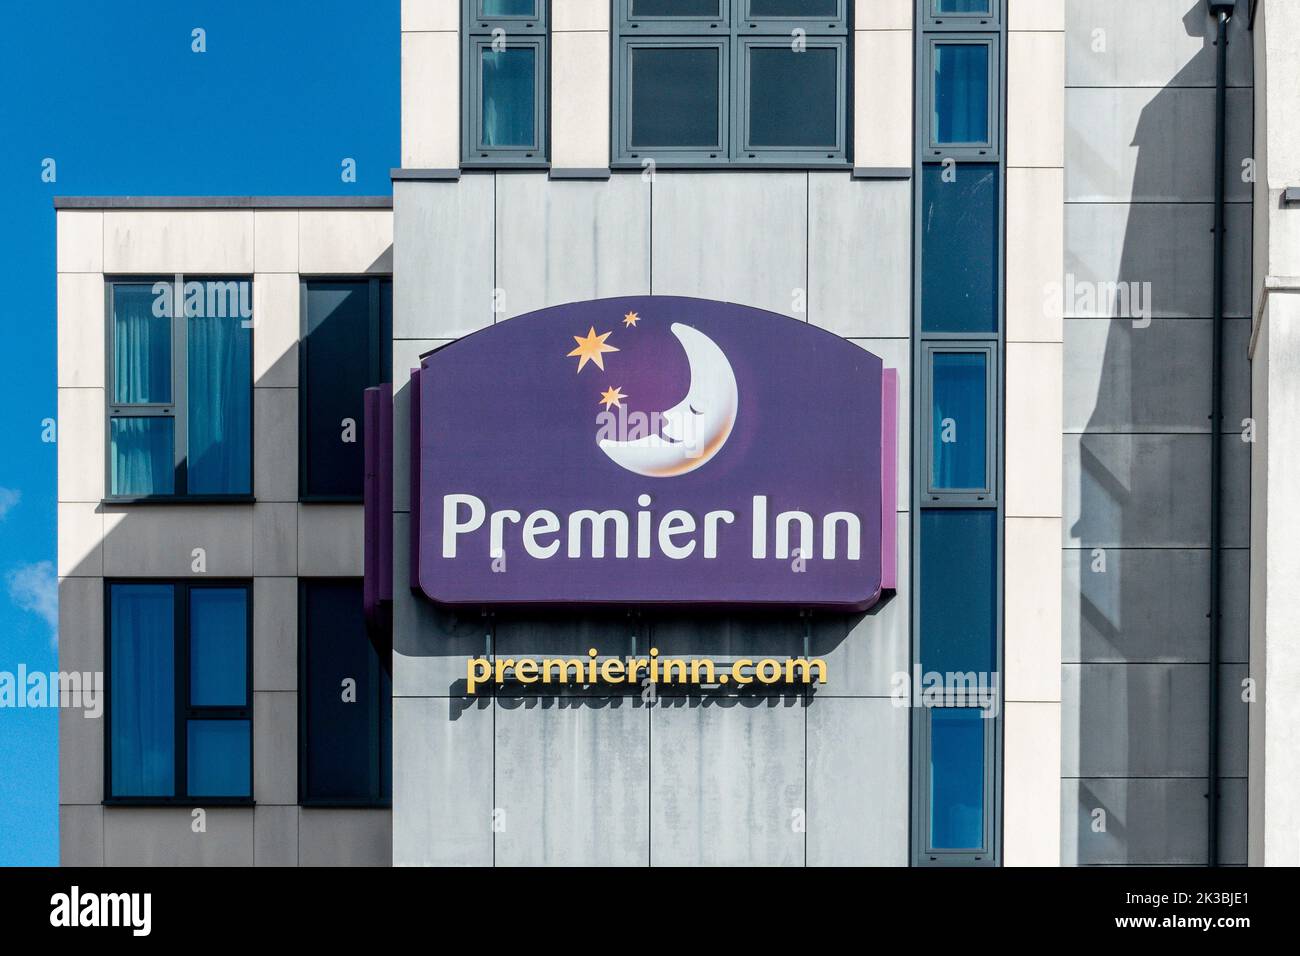 Premiere Inn,Hôtel,panneau,New Dover Road,Canterbury,Kent,Angleterre Banque D'Images